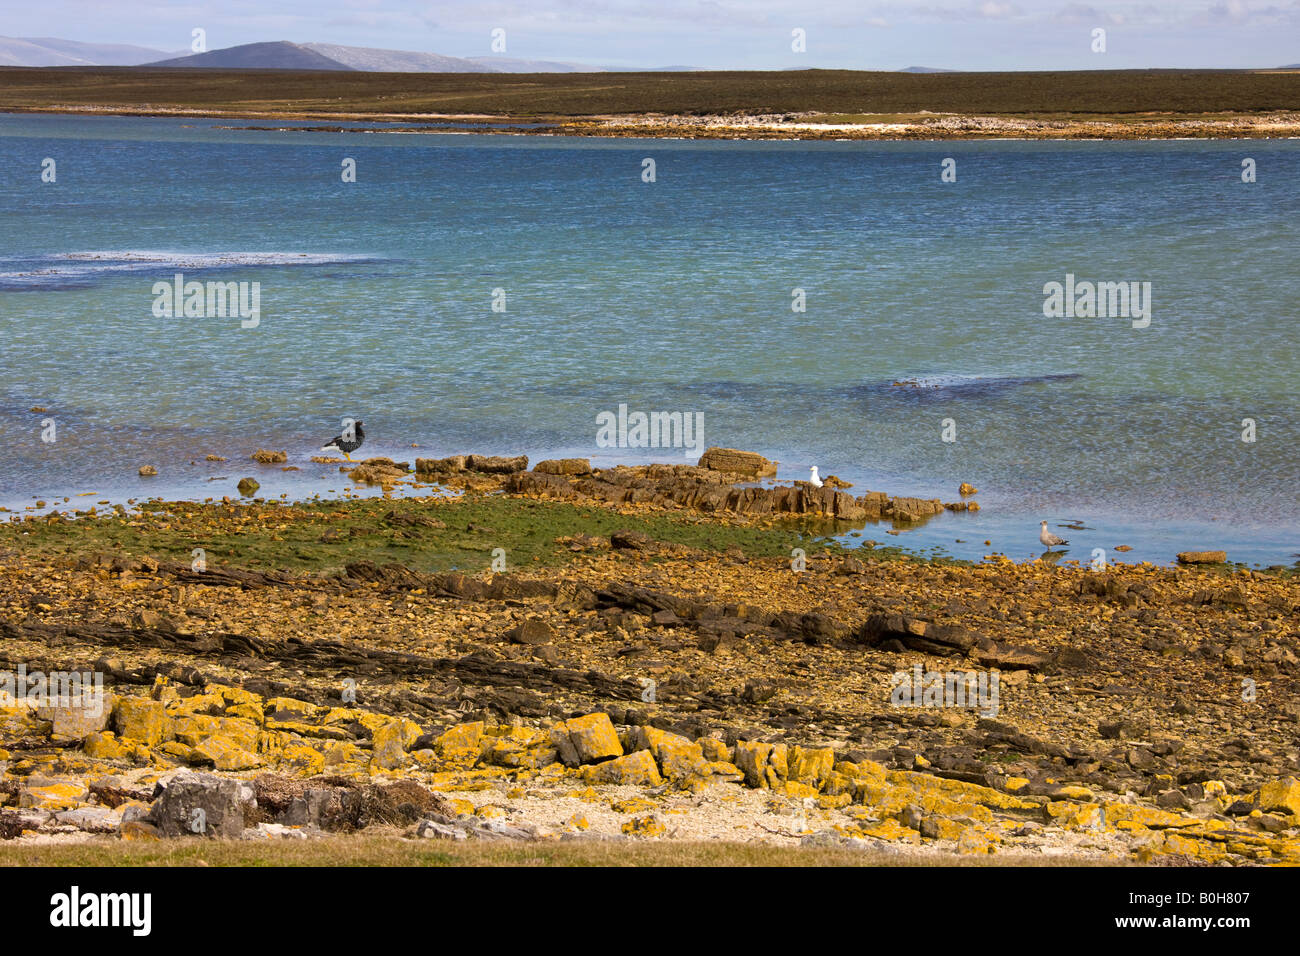 Scenic ingresso sull isola di ghiaia in Occidente in Falkland Isole Falkland Foto Stock